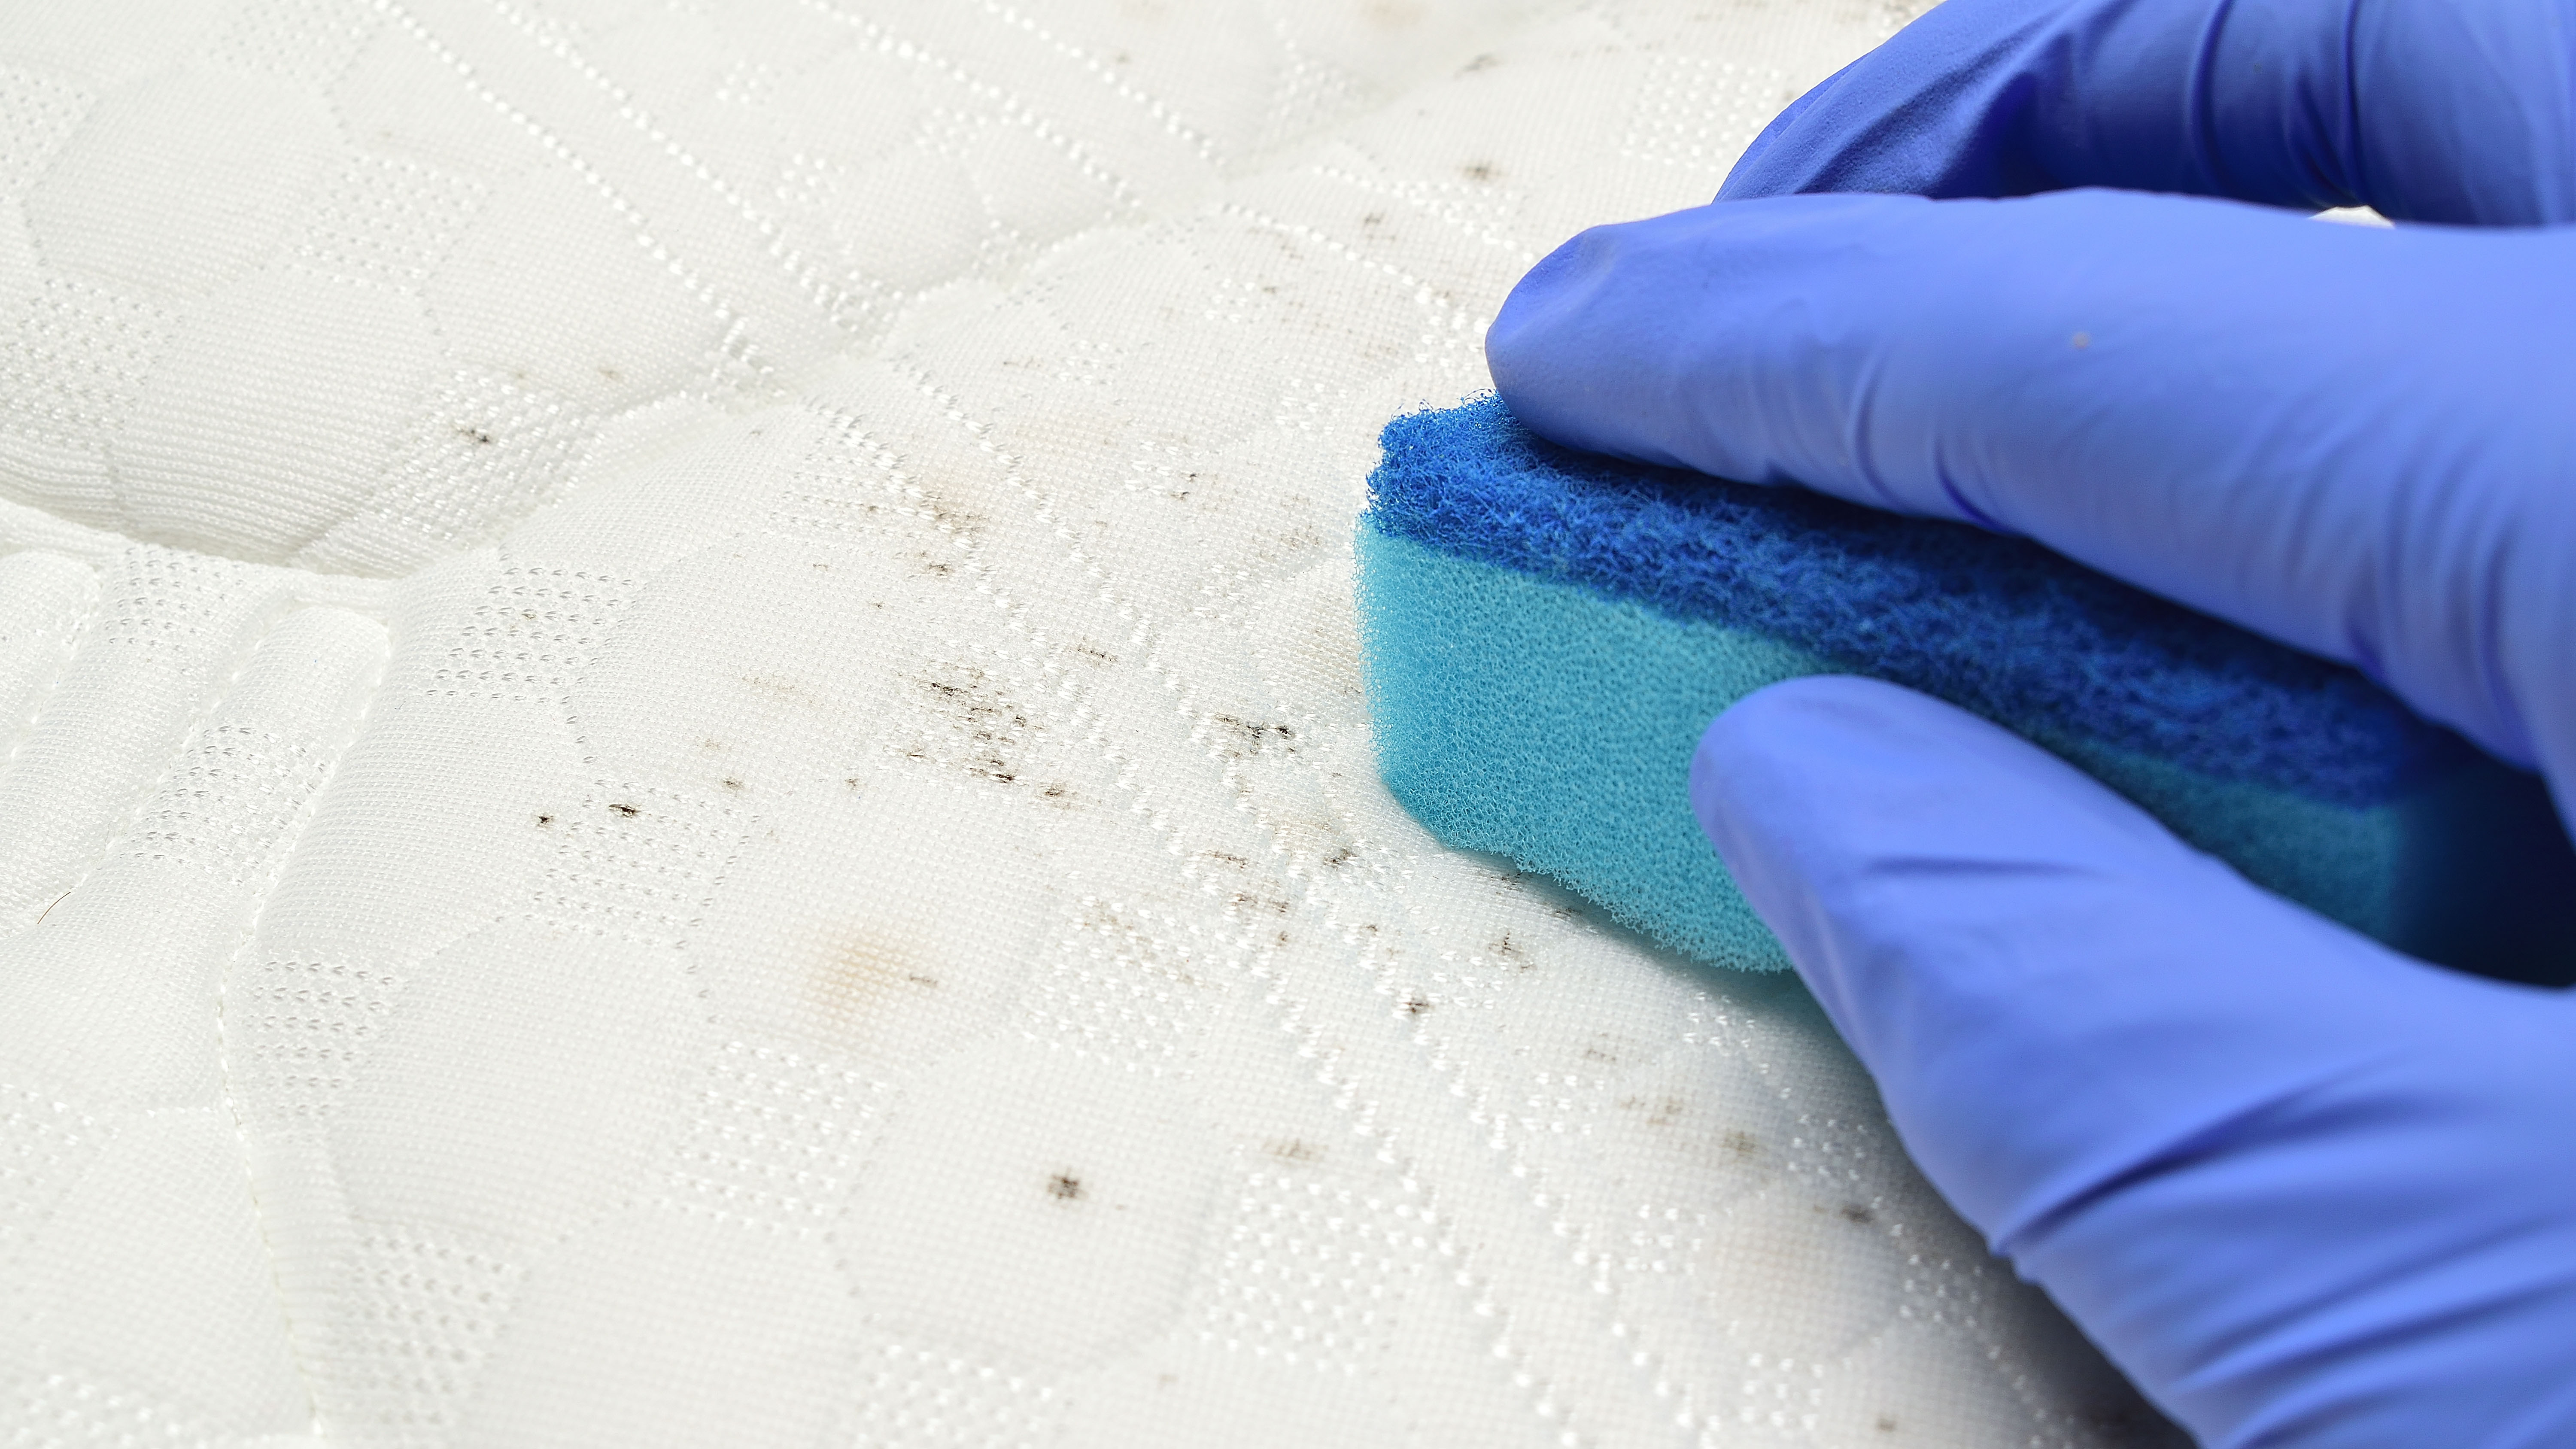 Resimde mavi tek kullanımlık temizlik eldiveni giyen bir kişinin beyaz yataktaki siyah küfü fırçaladığı görülüyor